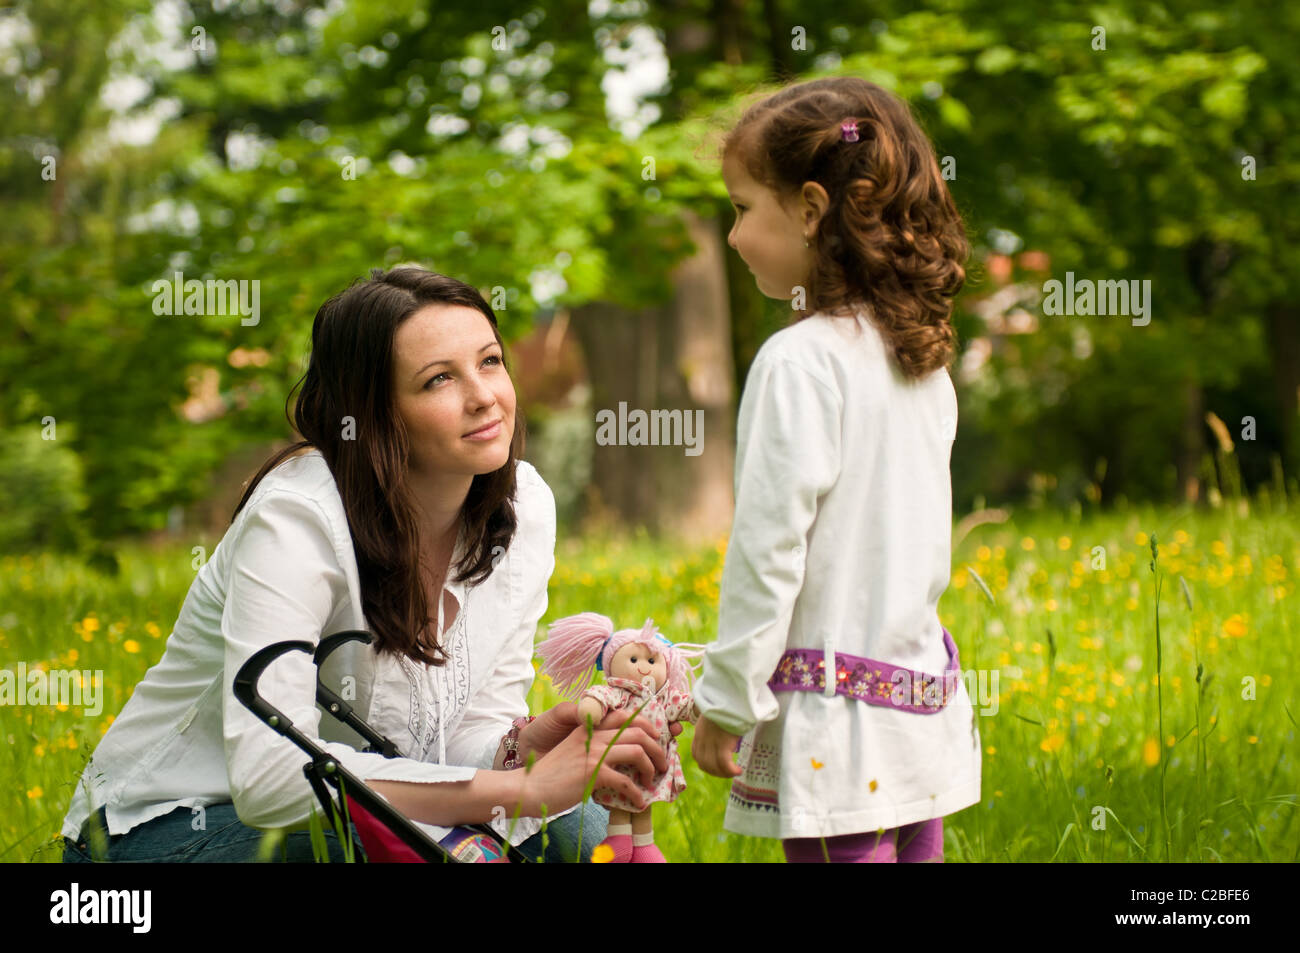 Mutter verbringt Zeit mit ihr niedliche Mädchen draußen im Park - Nostalgie-Stimmung Stockfoto